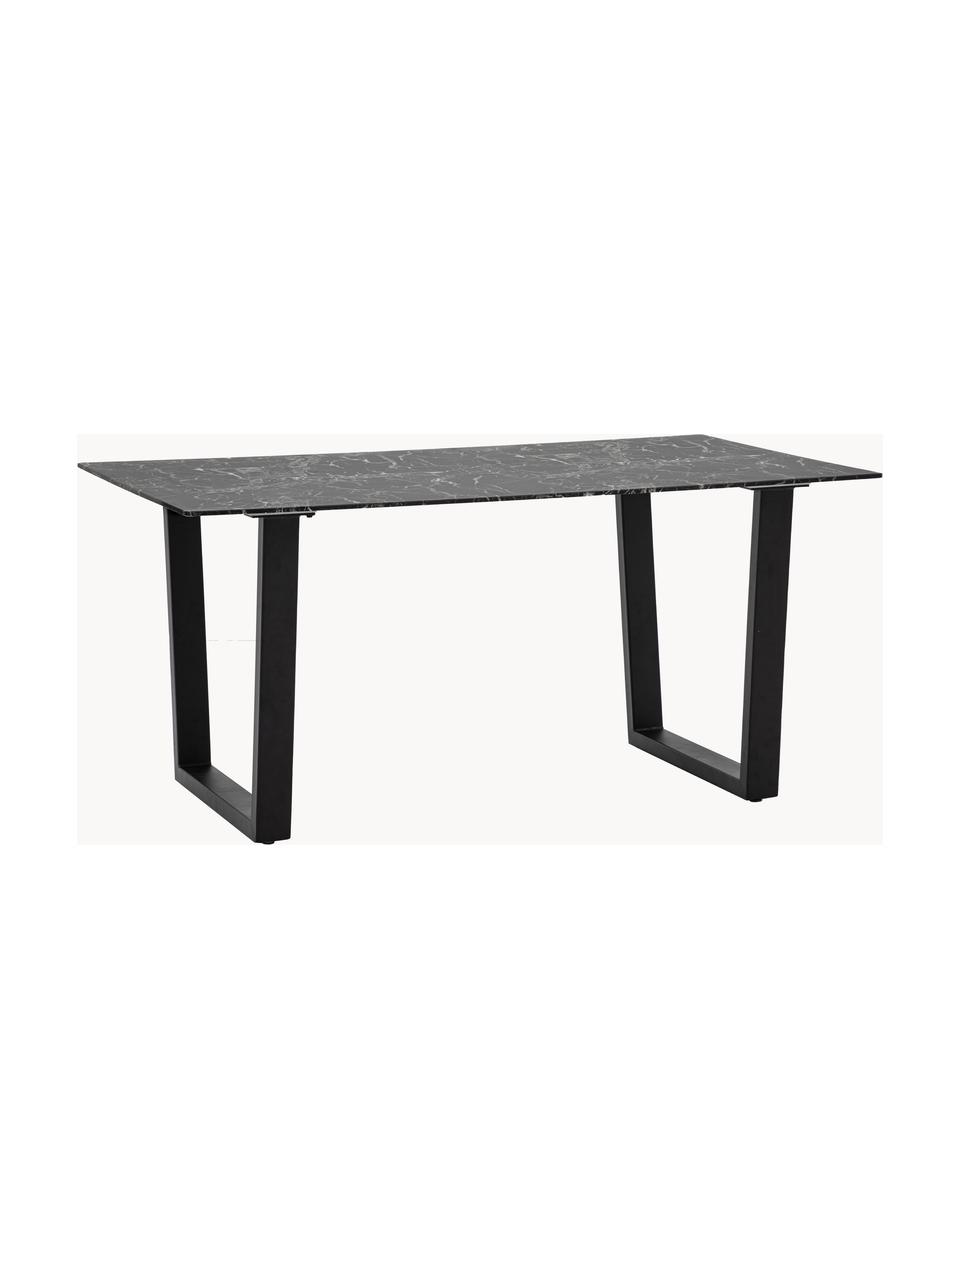 Jídelní stůl se skleněnou deskou v mramorovém vzhledu Davidson, 160 x 90 cm, Černý mramorový vzhled, černá, Š 160 cm, H 90 cm